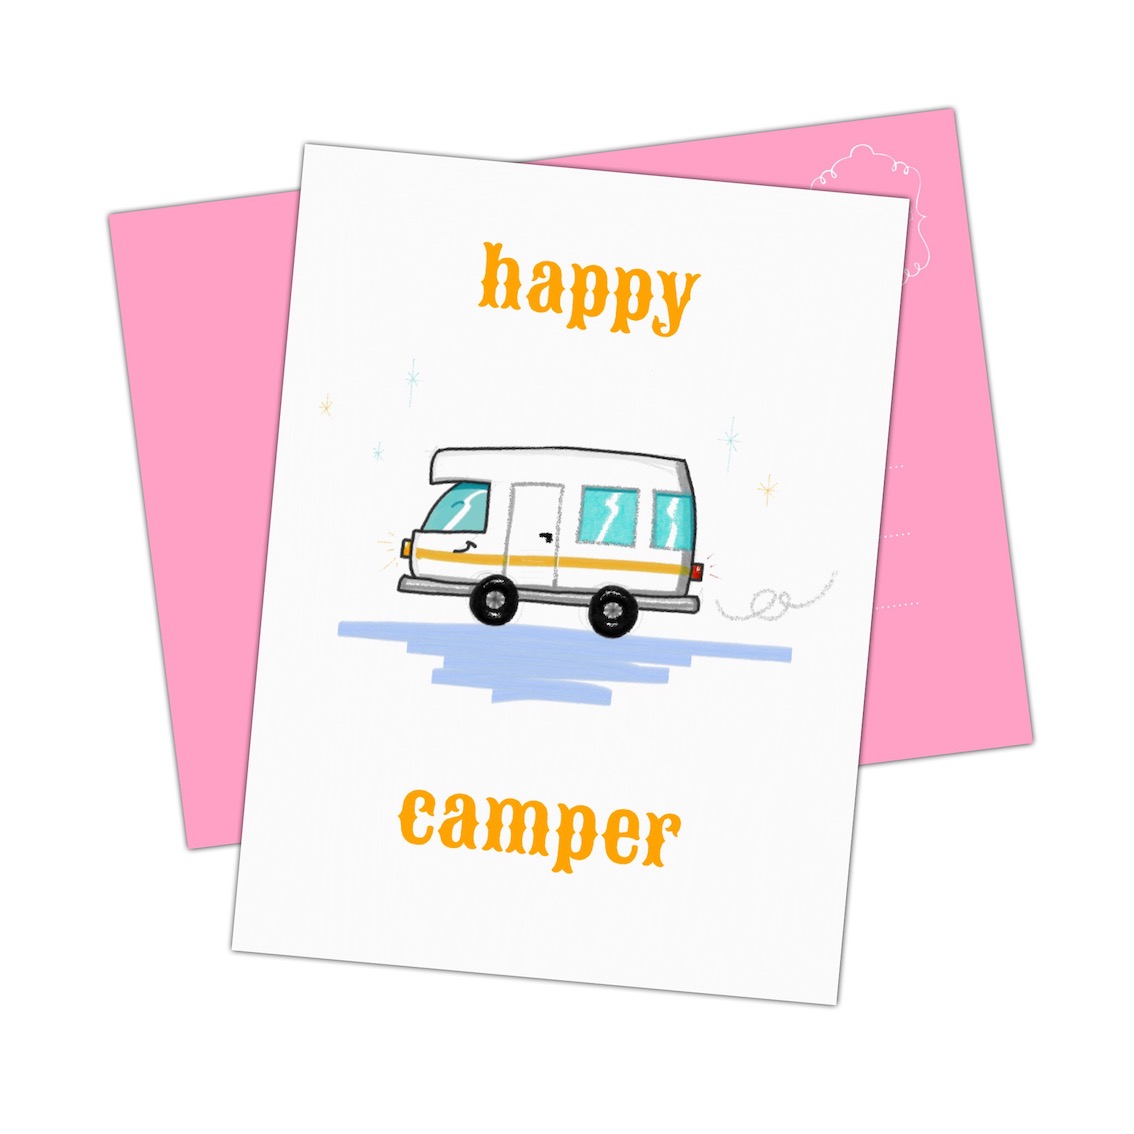 George Hanbury Perioperatieve periode Jumping jack ansichtkaart Happy Camper - leuke kaarten vind je bij Houtmoed